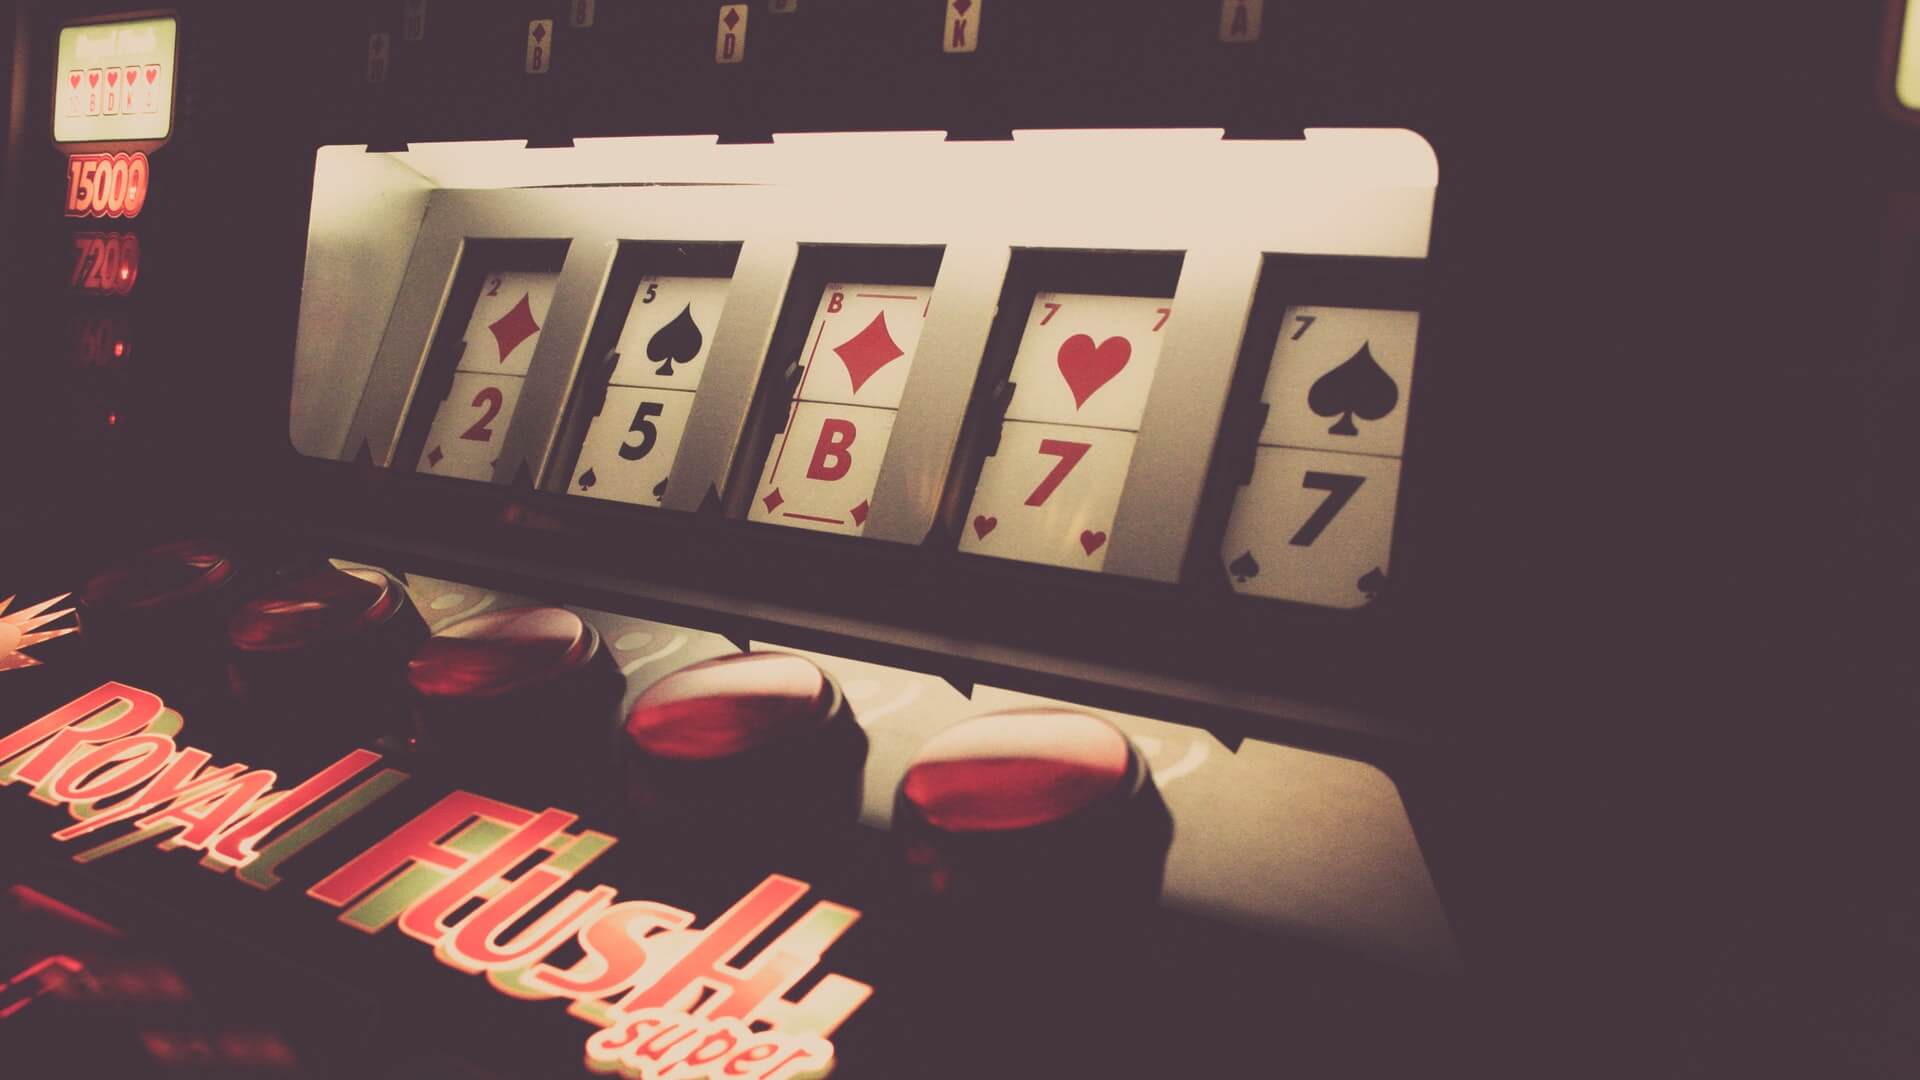 Casino Poker Games